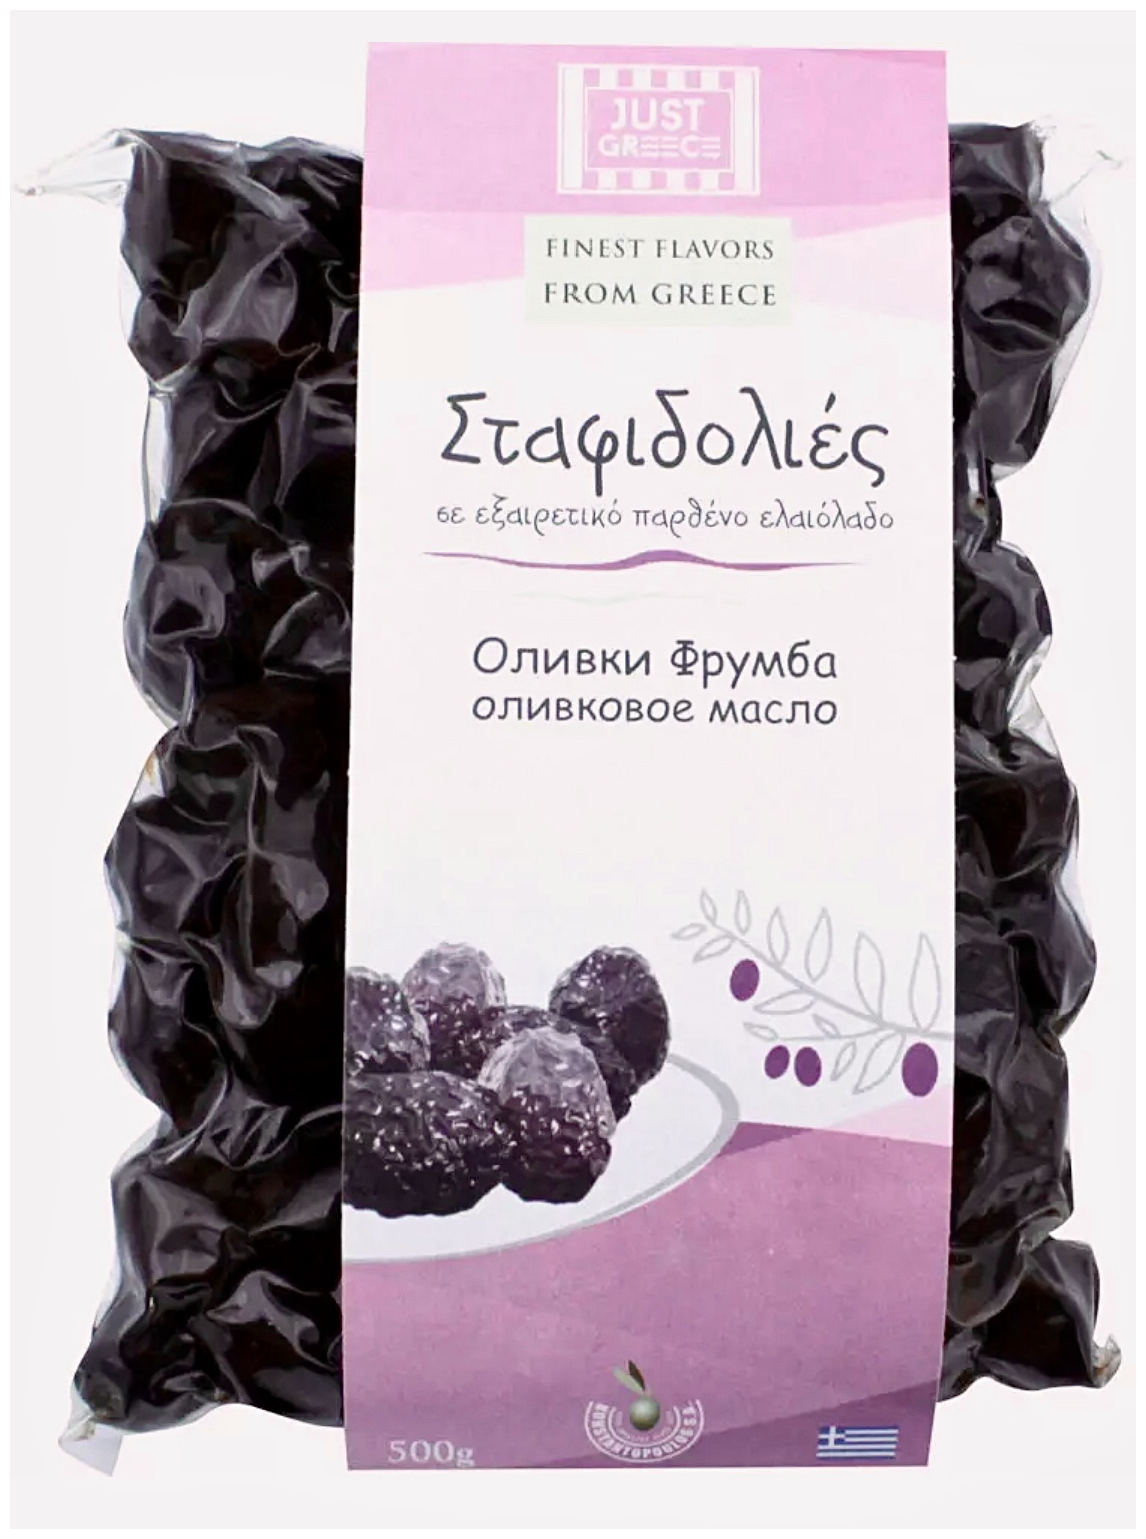 Маслины Минойские фрумба (вяленные) в оливковом масле Extra Virgin Just Greece 500г вакуум